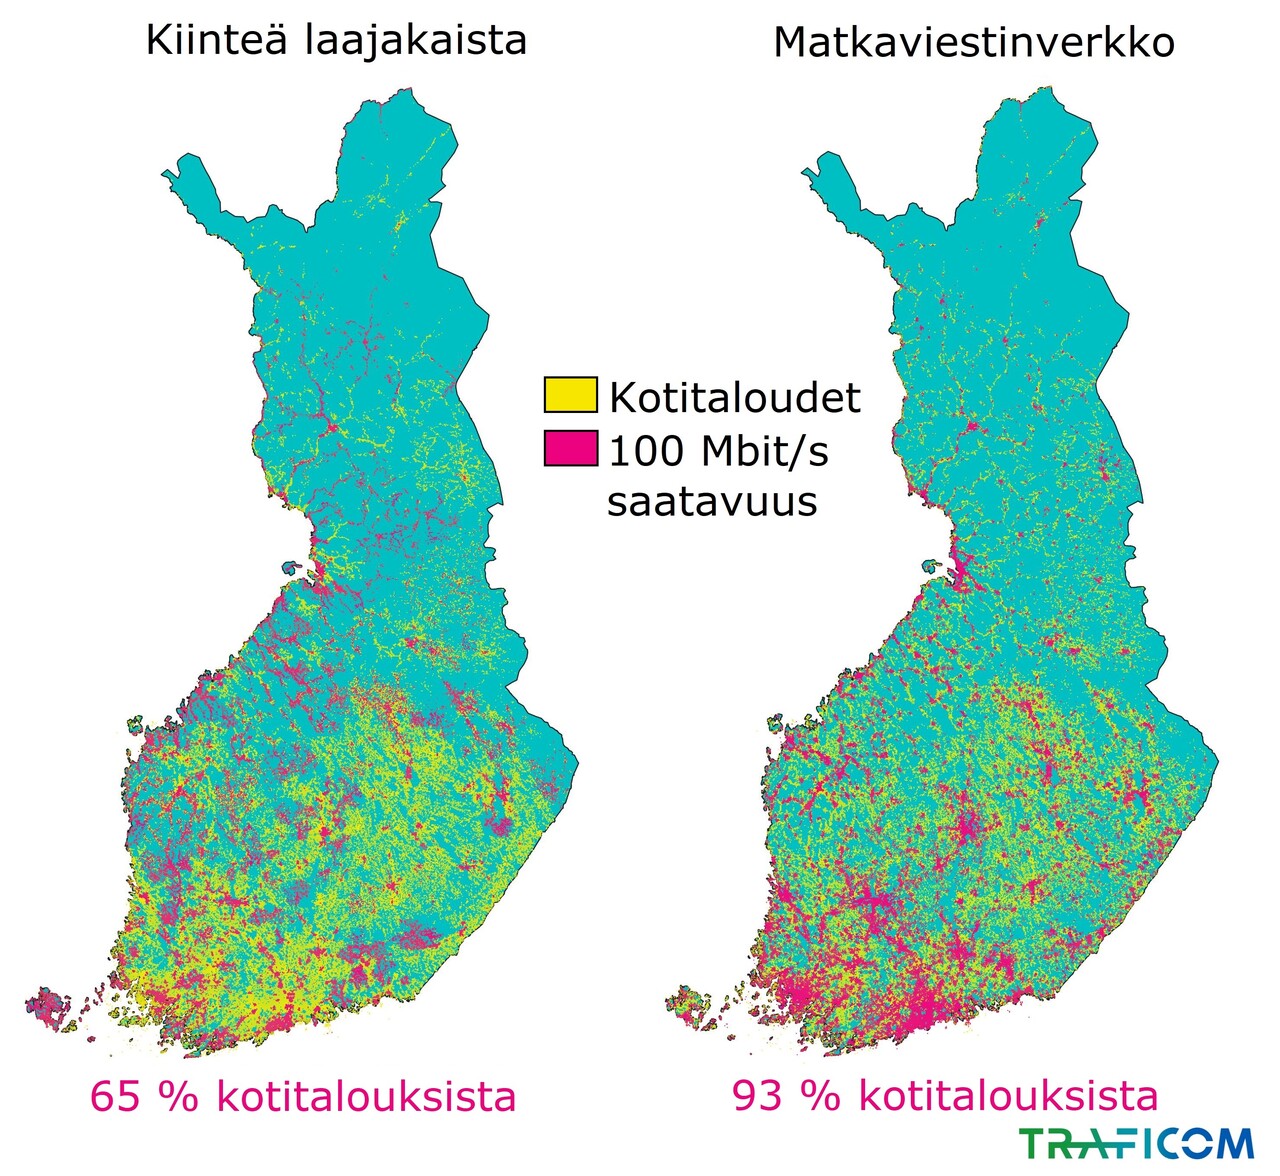 Kartalla esitetään kiinteän laajakaistan ja matkaviestinverkon 100 Mbit/s saatavuus kotitalouksiin Suomessa vuoden 2020 lopussa: Kiinteä laajakaista 65 % kotitalouksista ja matkaviestinverkko 93 % kotitalouksista.